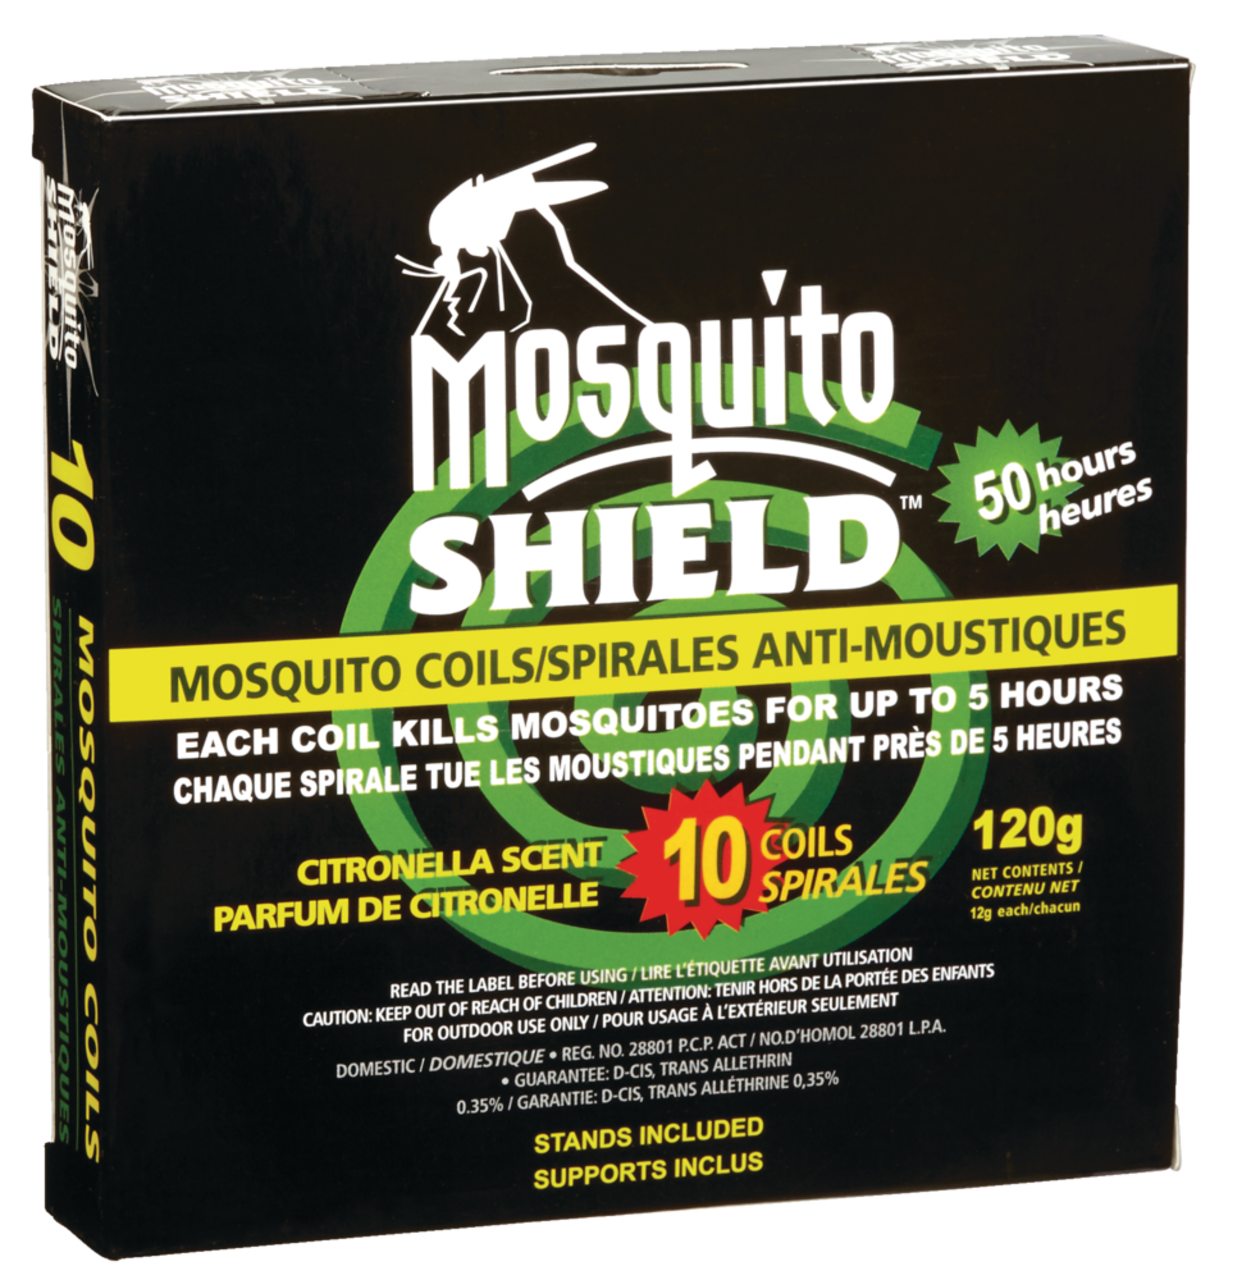 Spirale anti-moustiques Mosquito Shield boite (10 X 12g